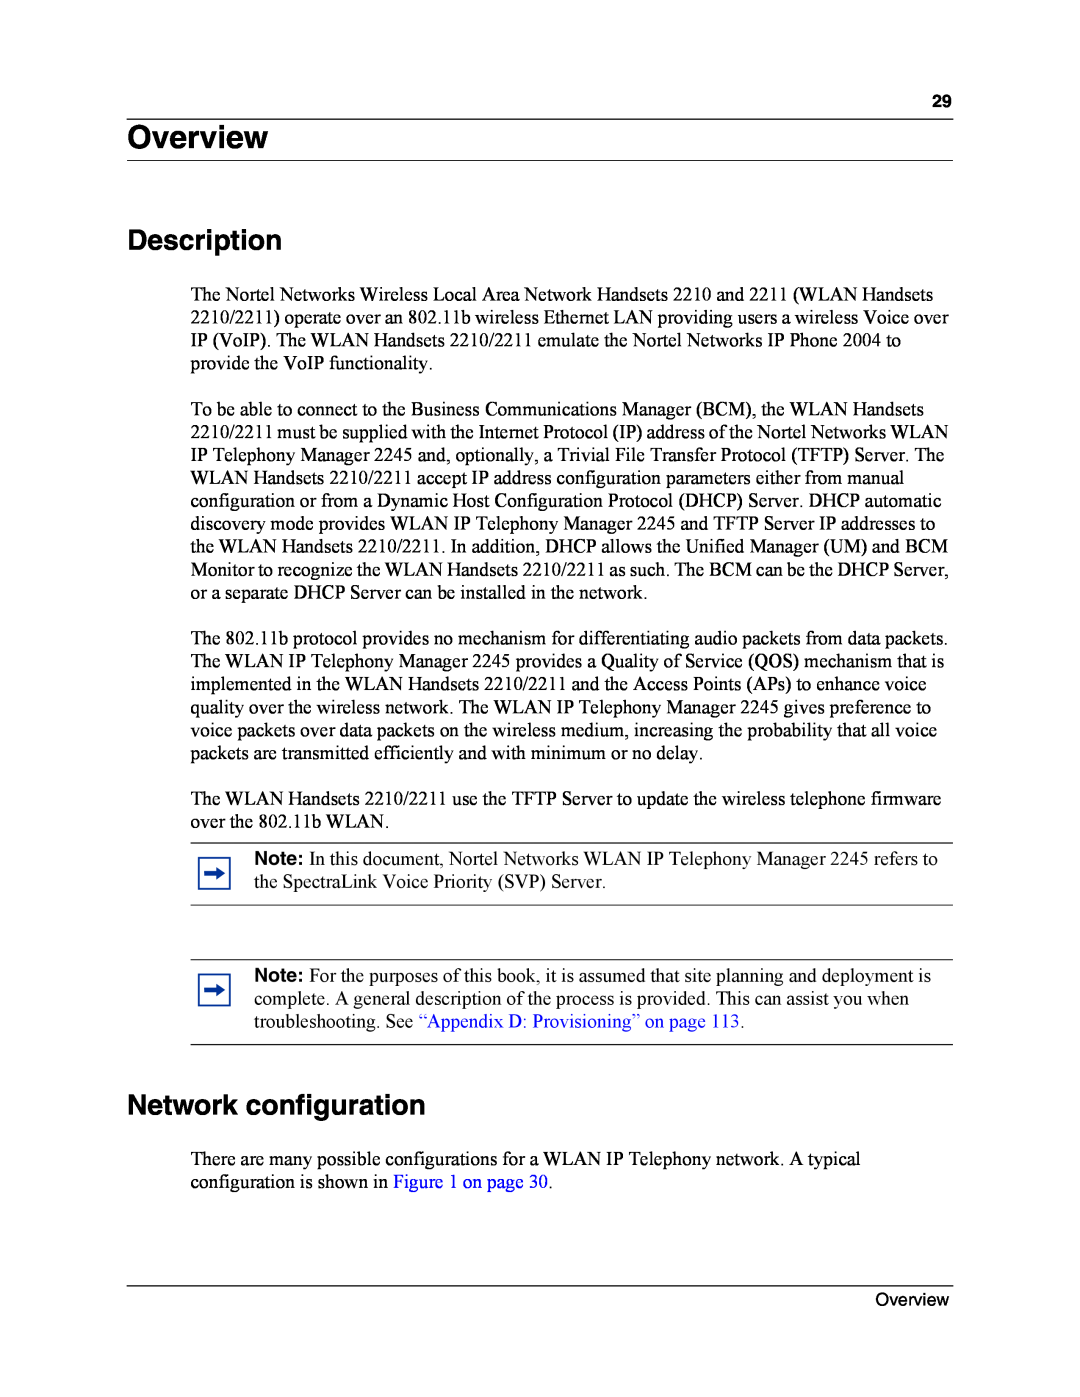 Nortel Networks MOG6xx, MOG7xx manual Overview, Description, Network configuration 